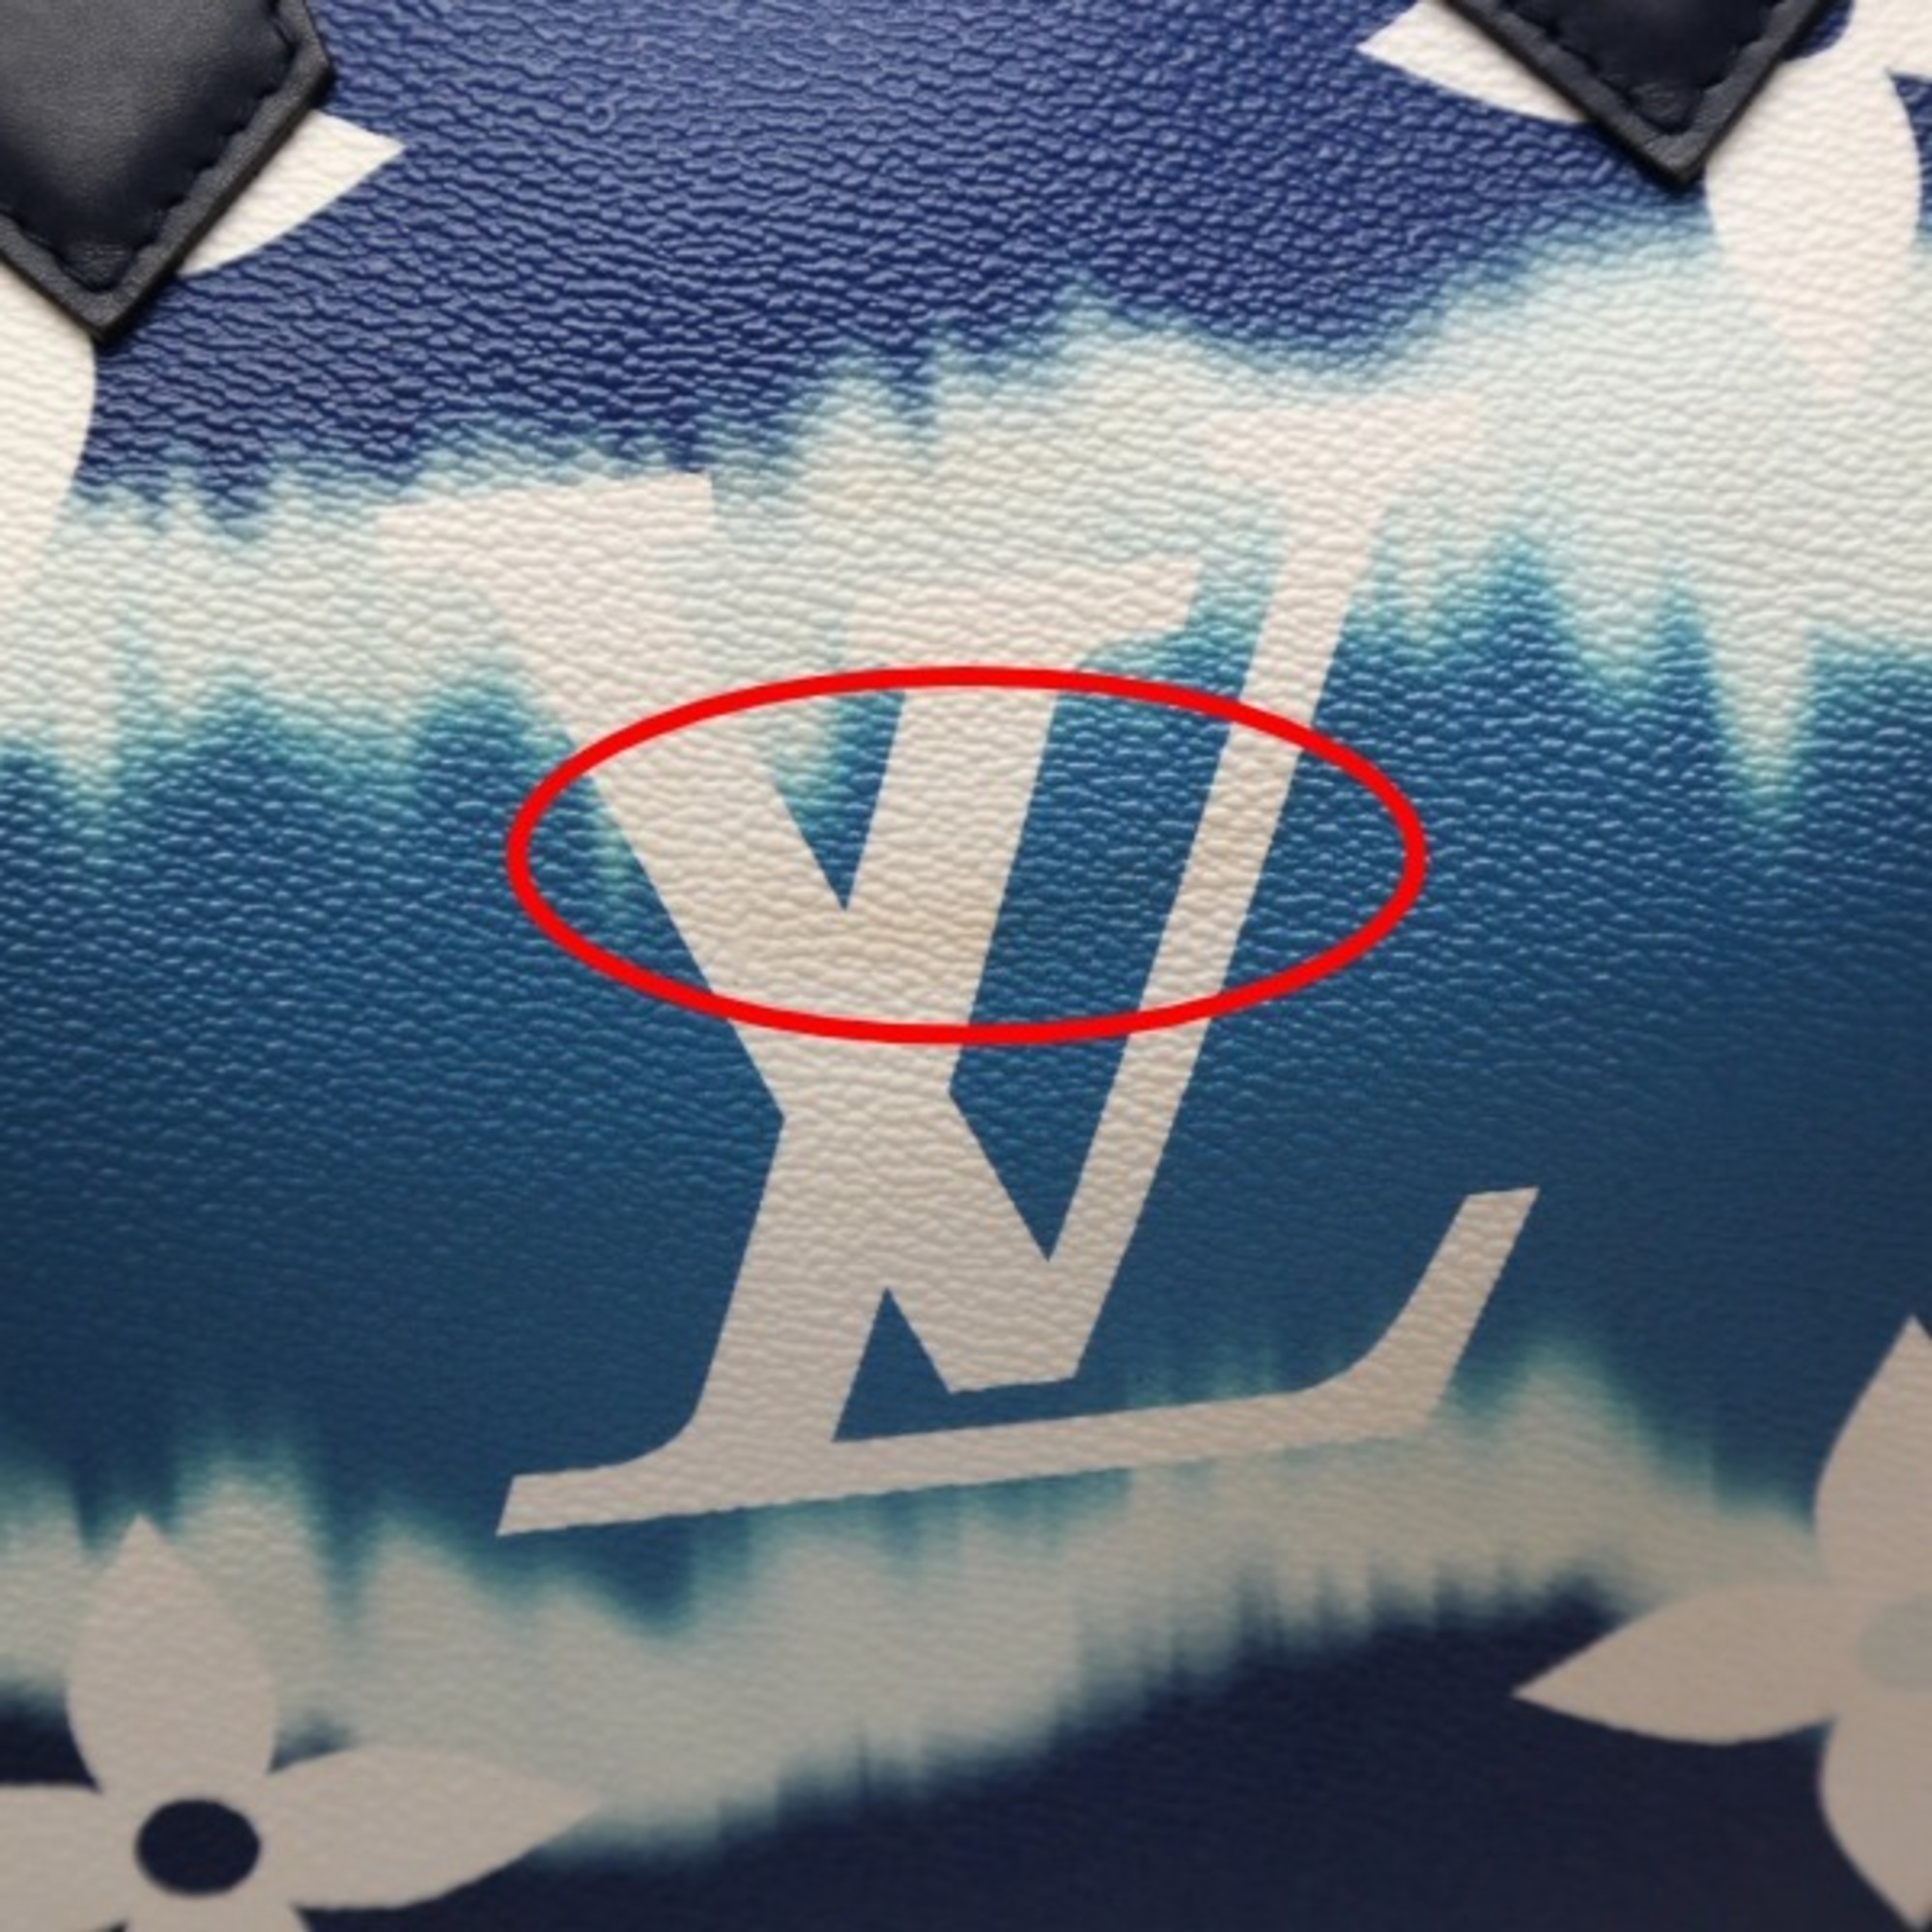 LOUIS VUITTON Bag Escale Speedy Bandouliere 30 M45146 Louis Vuitton Blue Shoulder LV